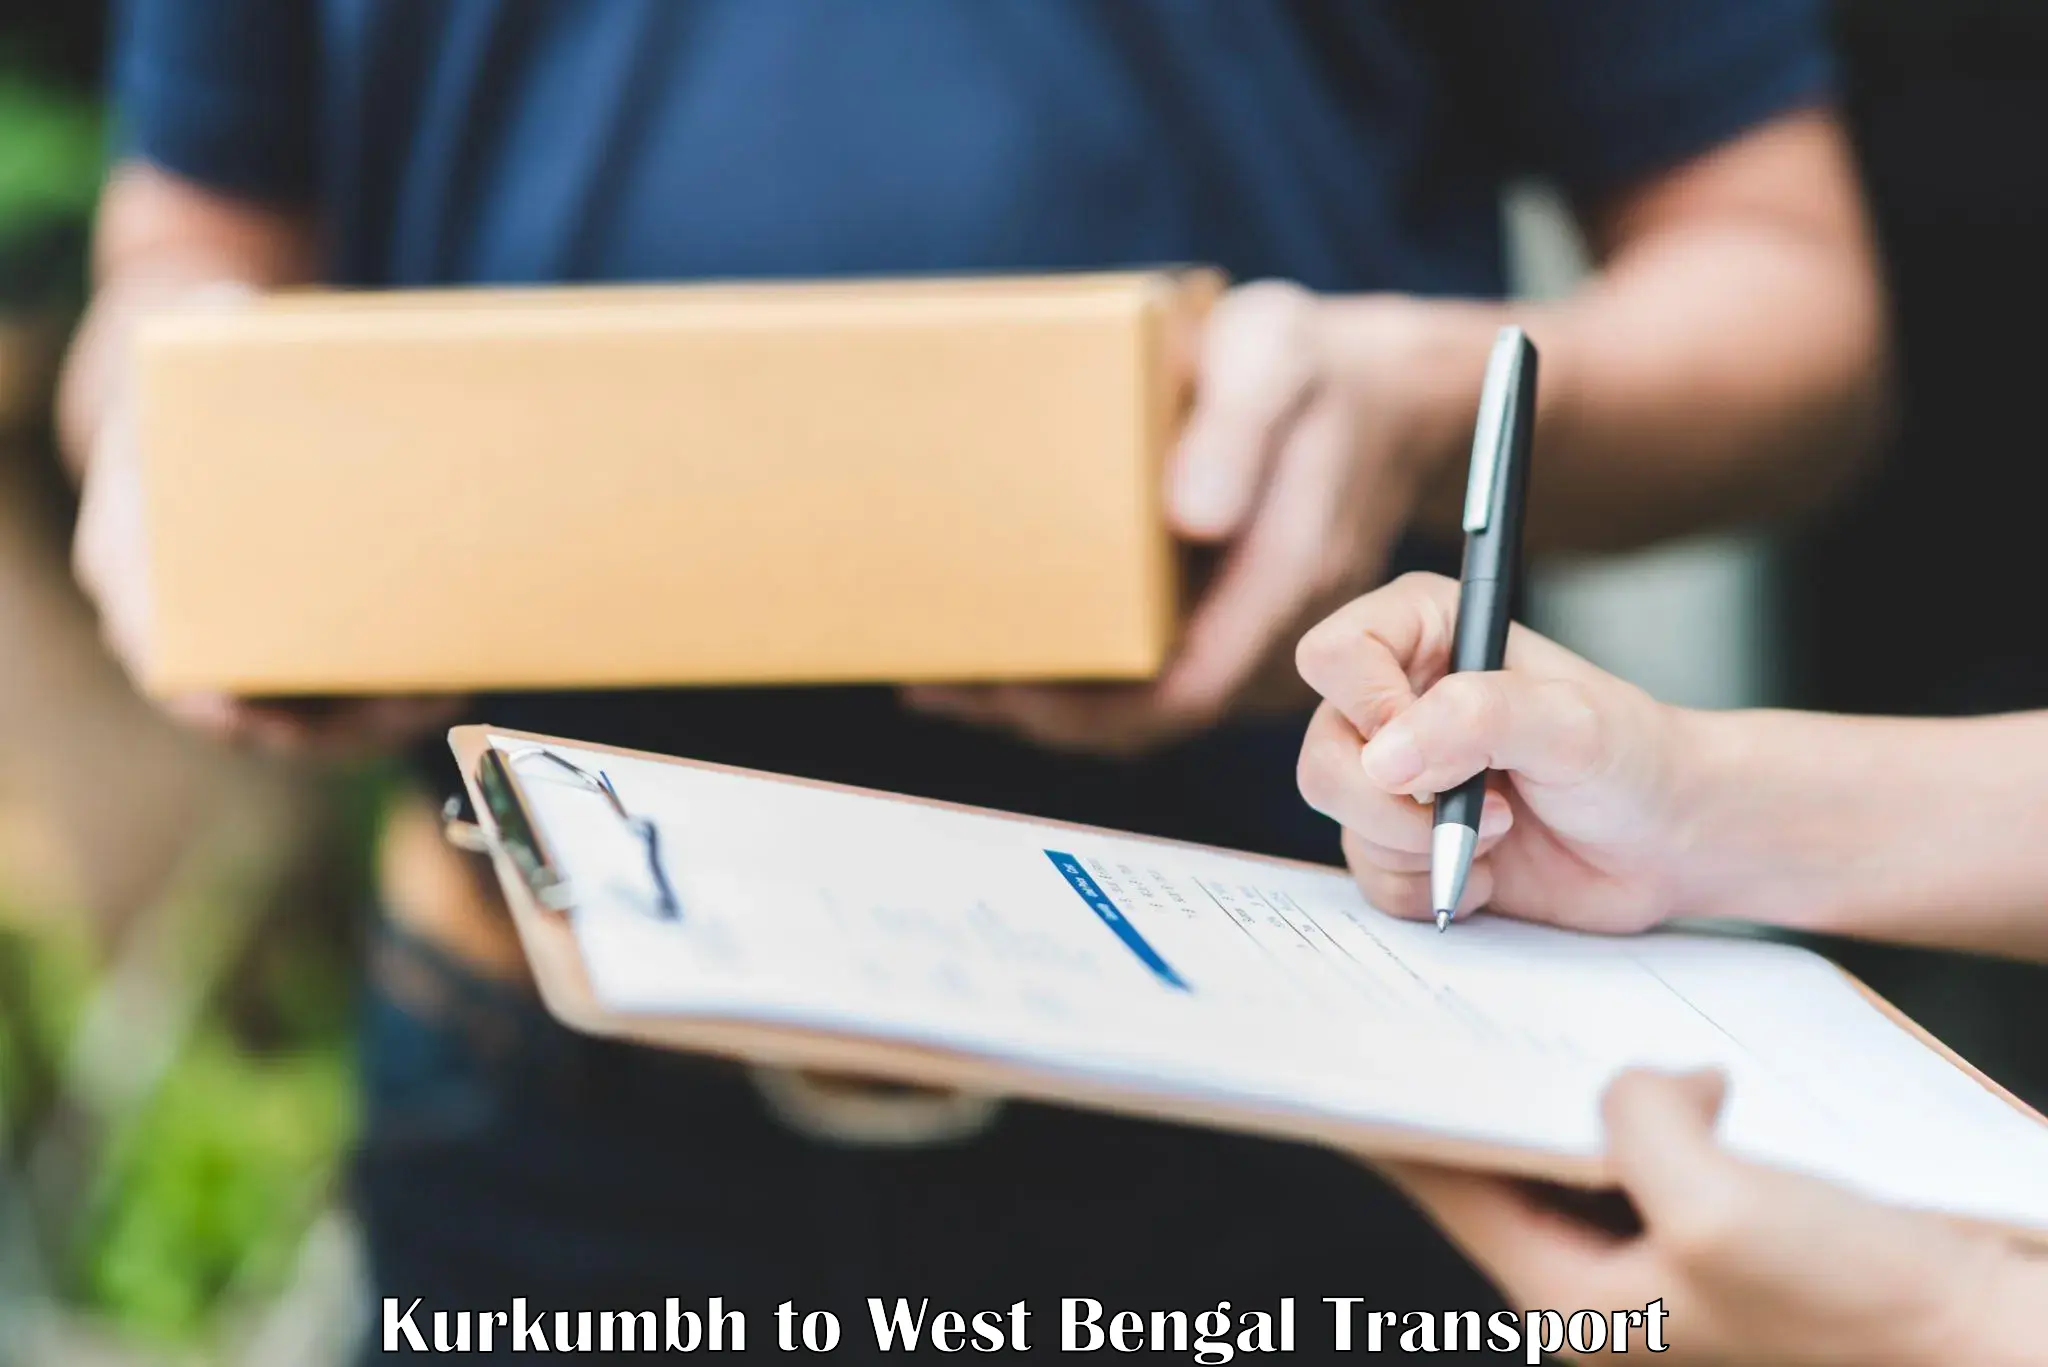 Domestic goods transportation services Kurkumbh to Calcutta University Kolkata